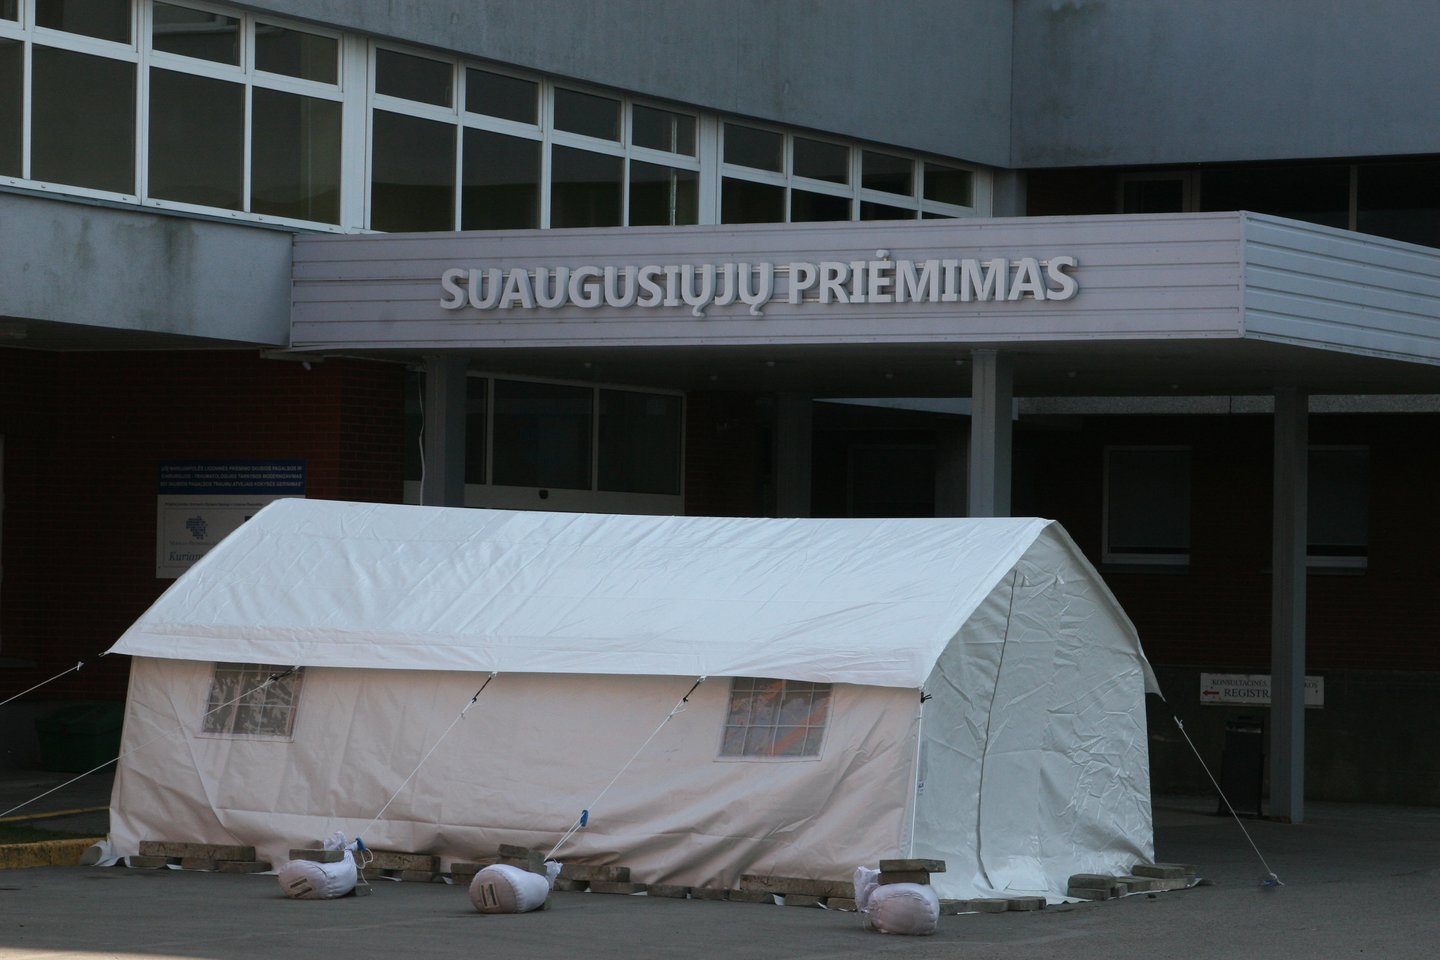 Marijampolės savivaldybė sutiko pakeisti ligoninės direktorės Audronės Kuodienės atleidimo iš pareigų pagrindą ir išmokėti išeitinę kompensaciją.<br>L.Juodzevičienės nuotr.